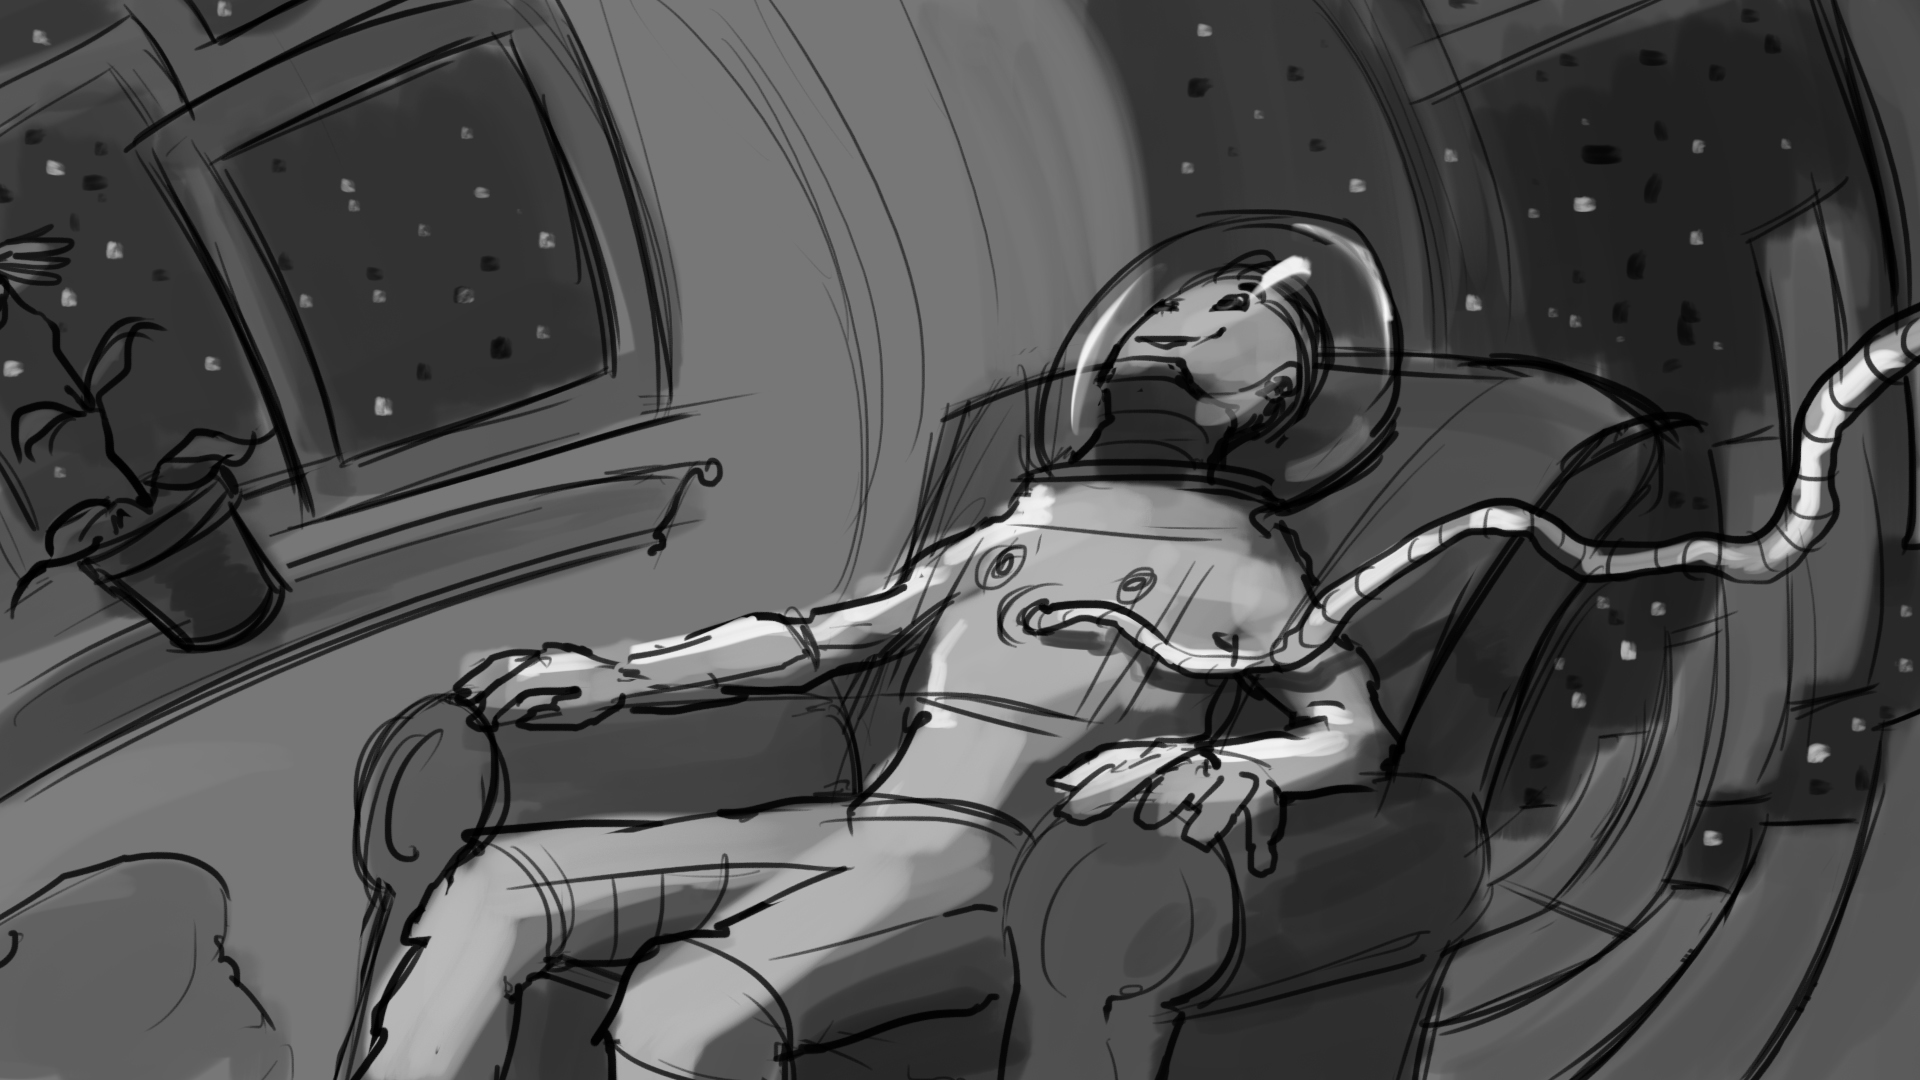 Rocket_Man_Storyboard_Artboard 35.jpg